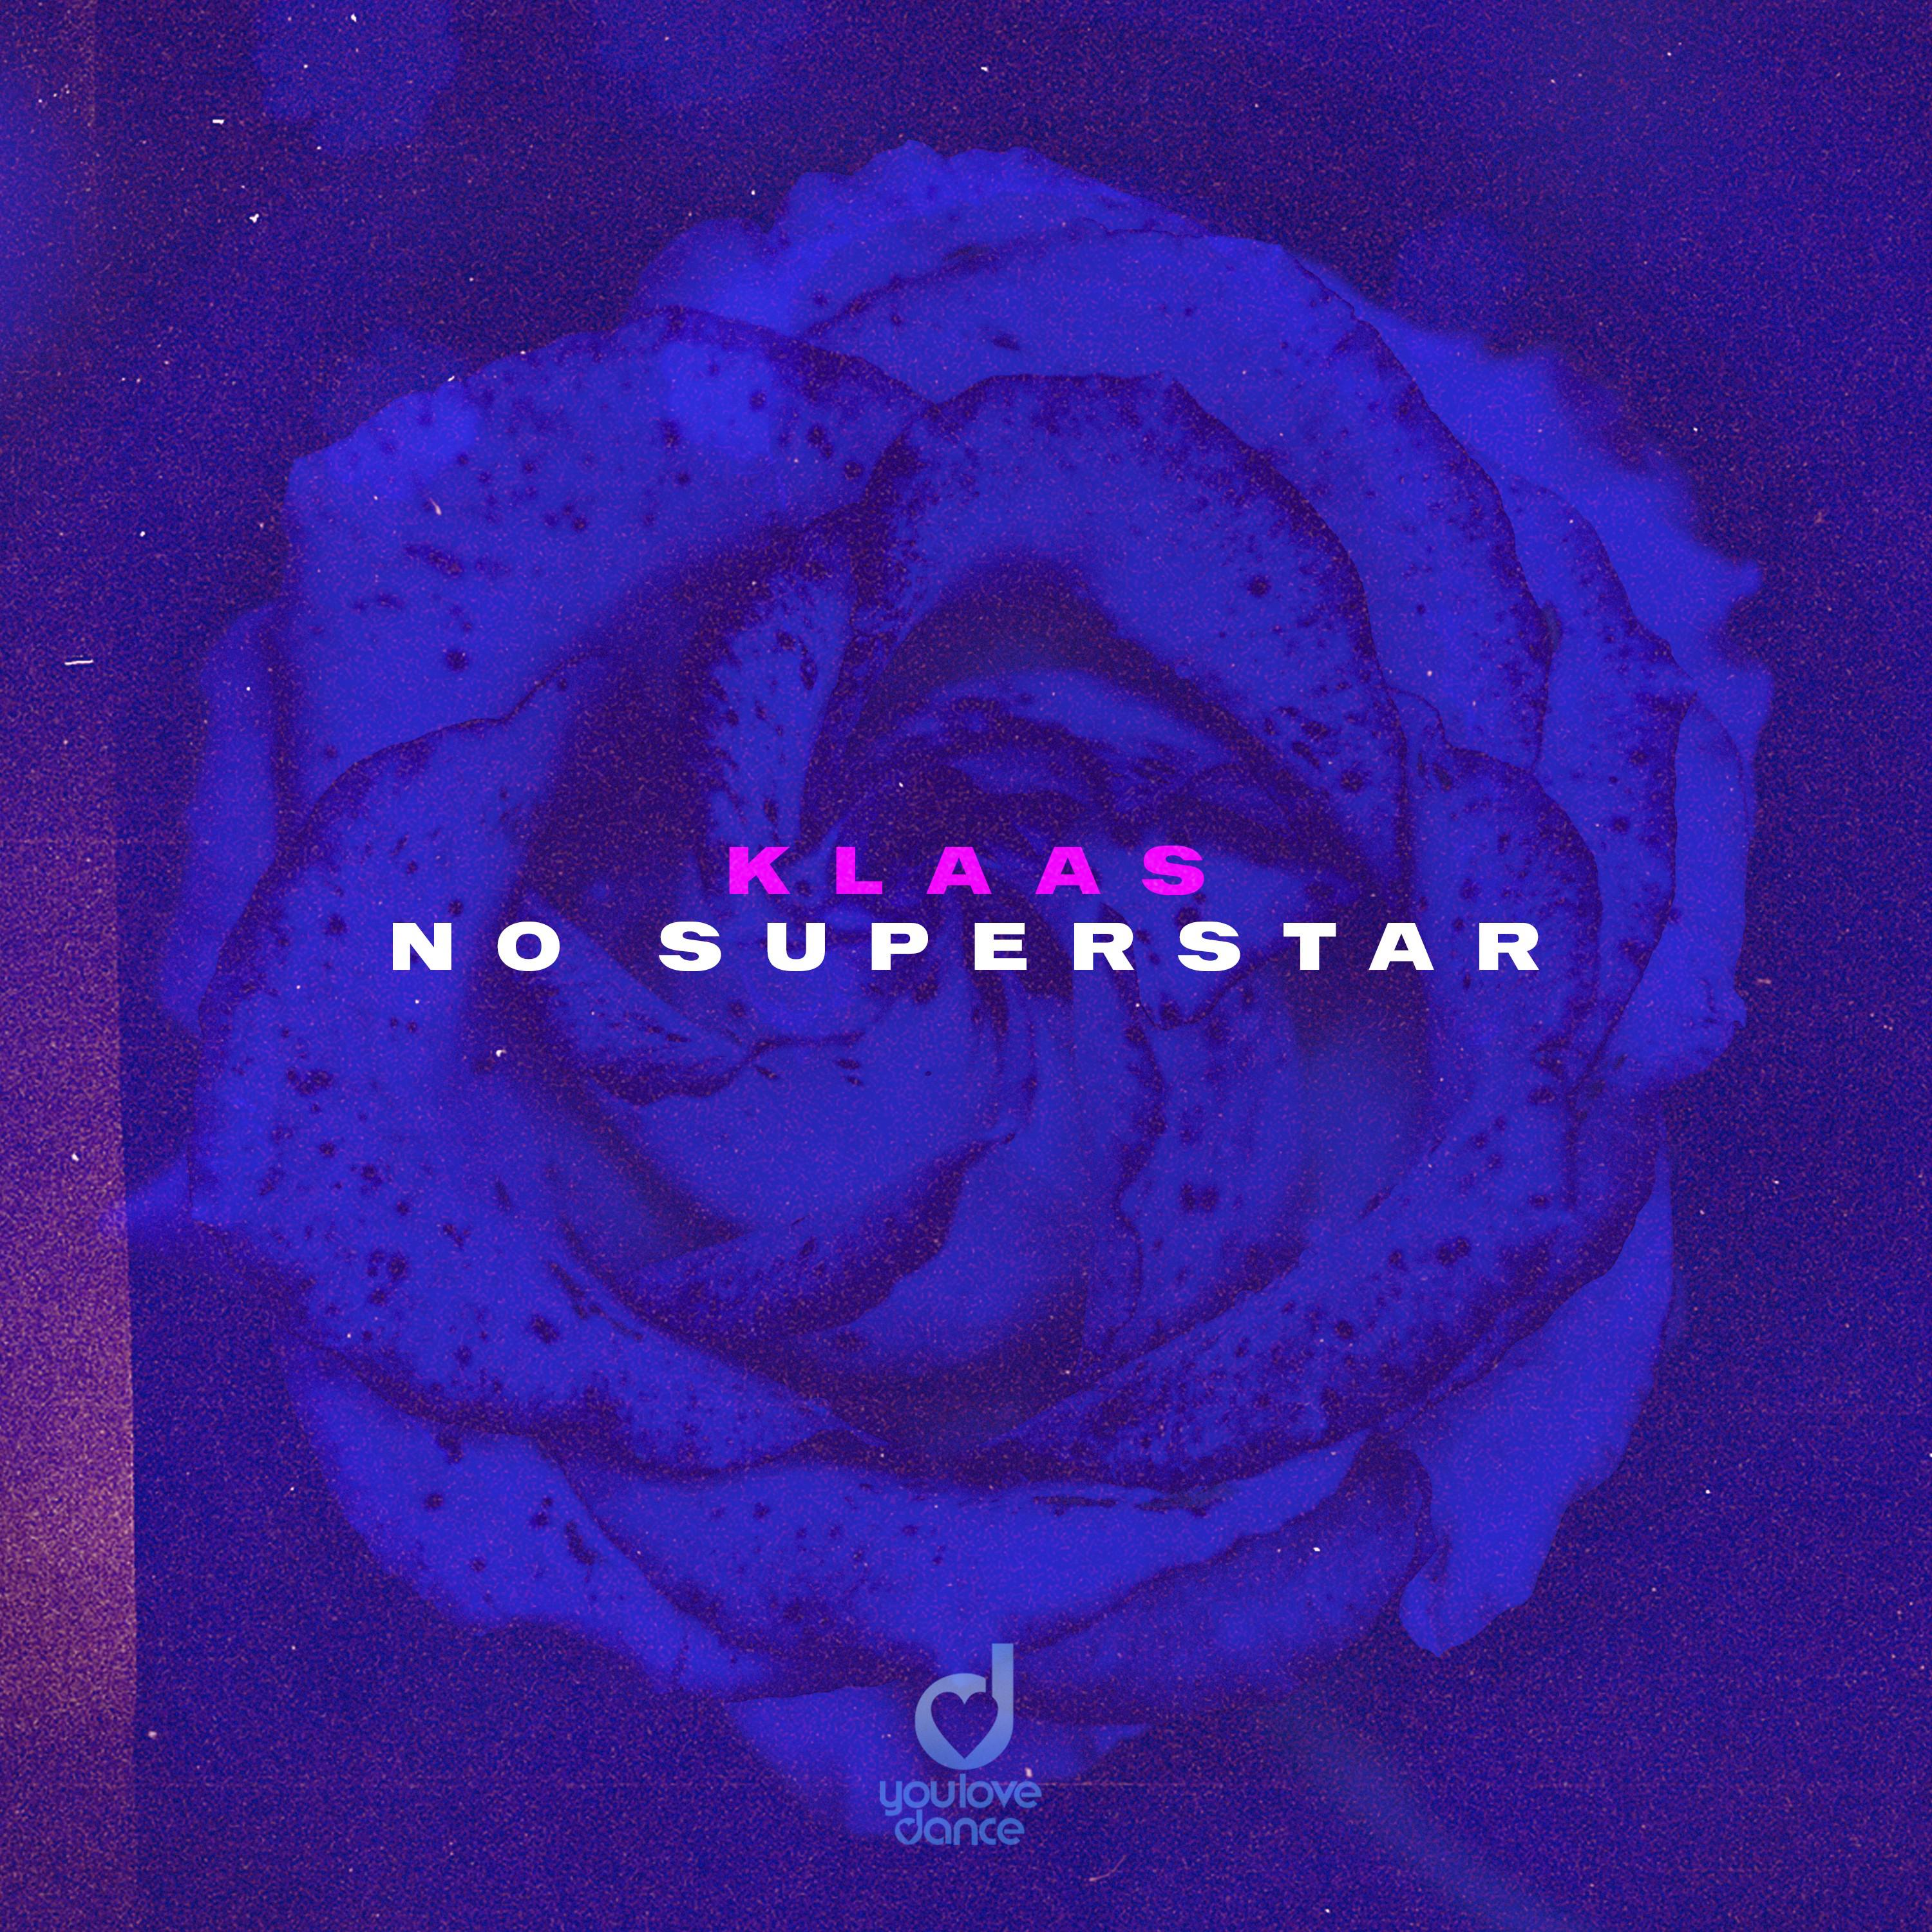 No Superstar歌词 歌手Klaas-专辑No Superstar-单曲《No Superstar》LRC歌词下载